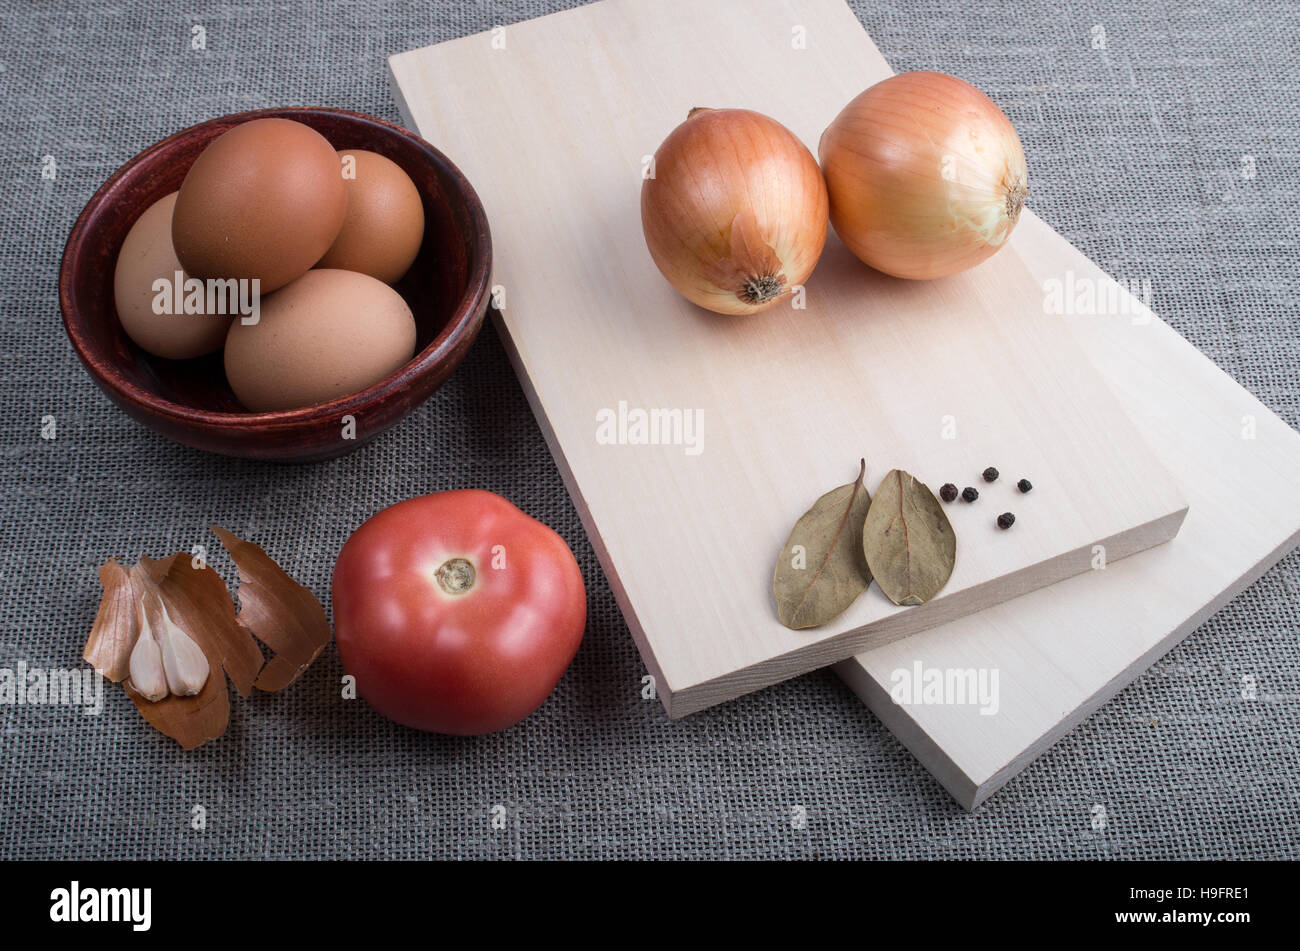 Ingrédients pour la cuisson des aliments dans vintage style - L'oeuf, l'oignon, la tomate, l'ail et les épices, des planches et une tasse sur fond textile Banque D'Images